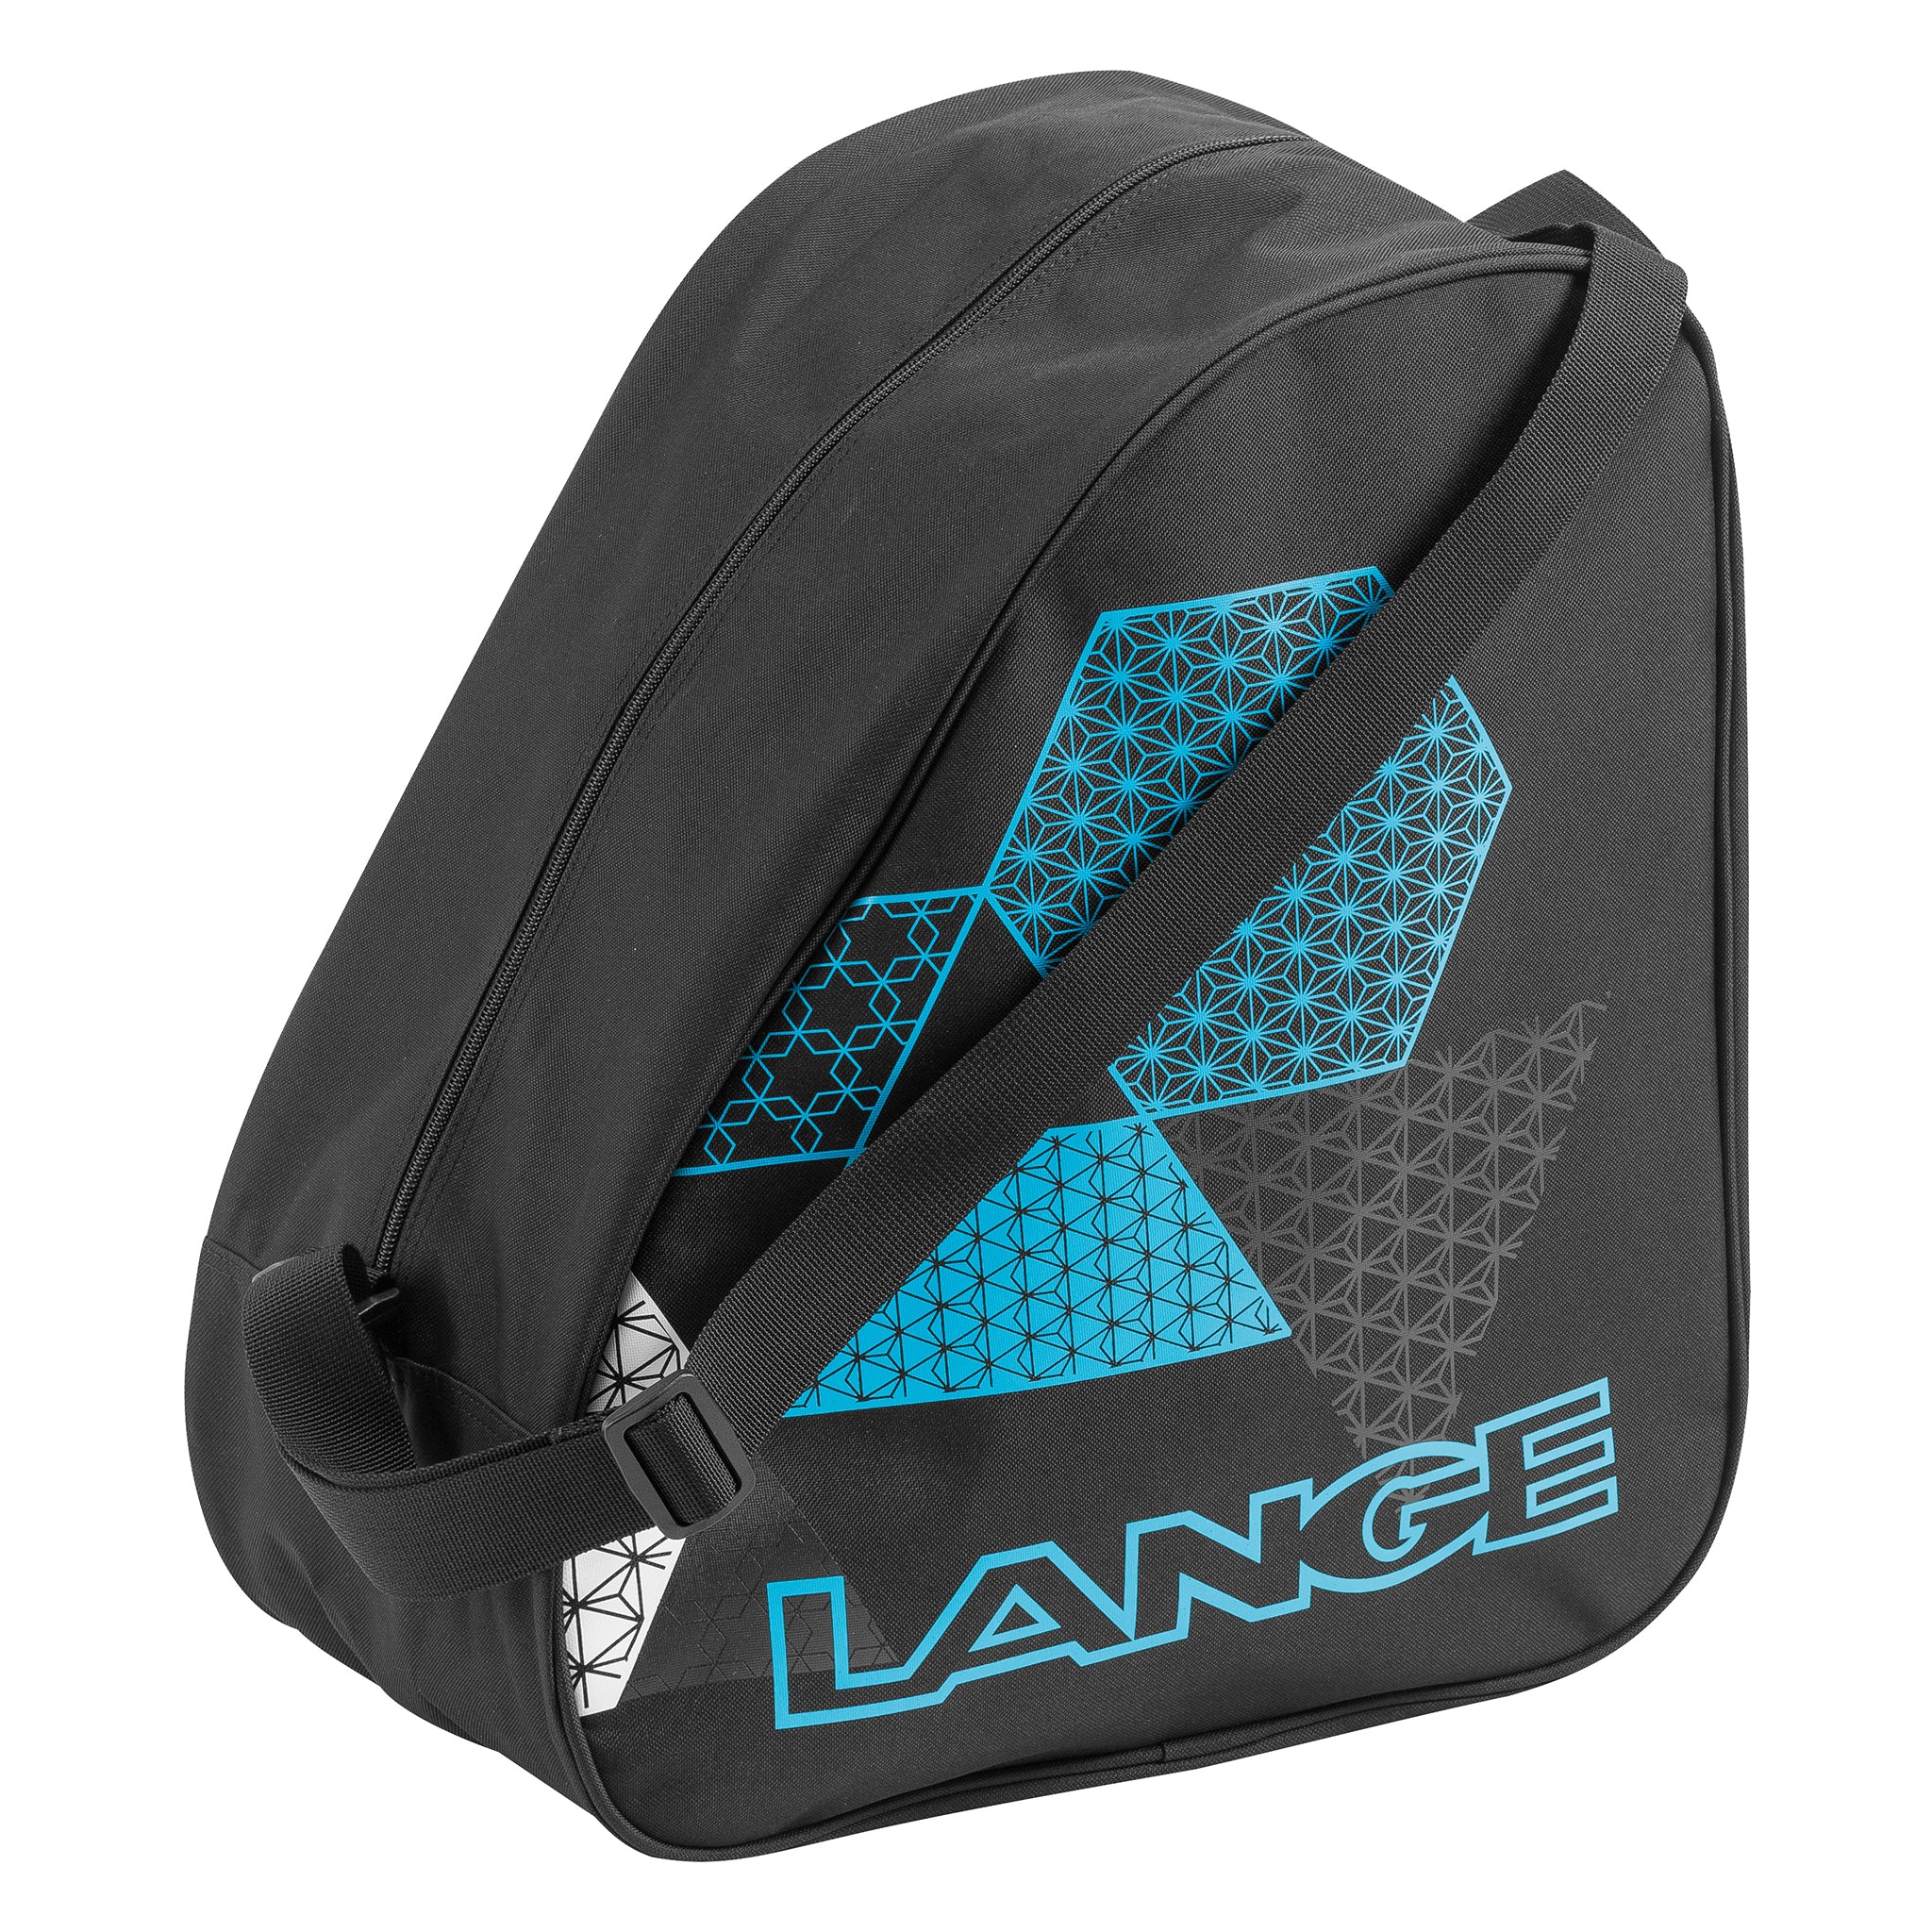 Ski boot bag Lange lange - Luggage - Equipment - Winter Sports